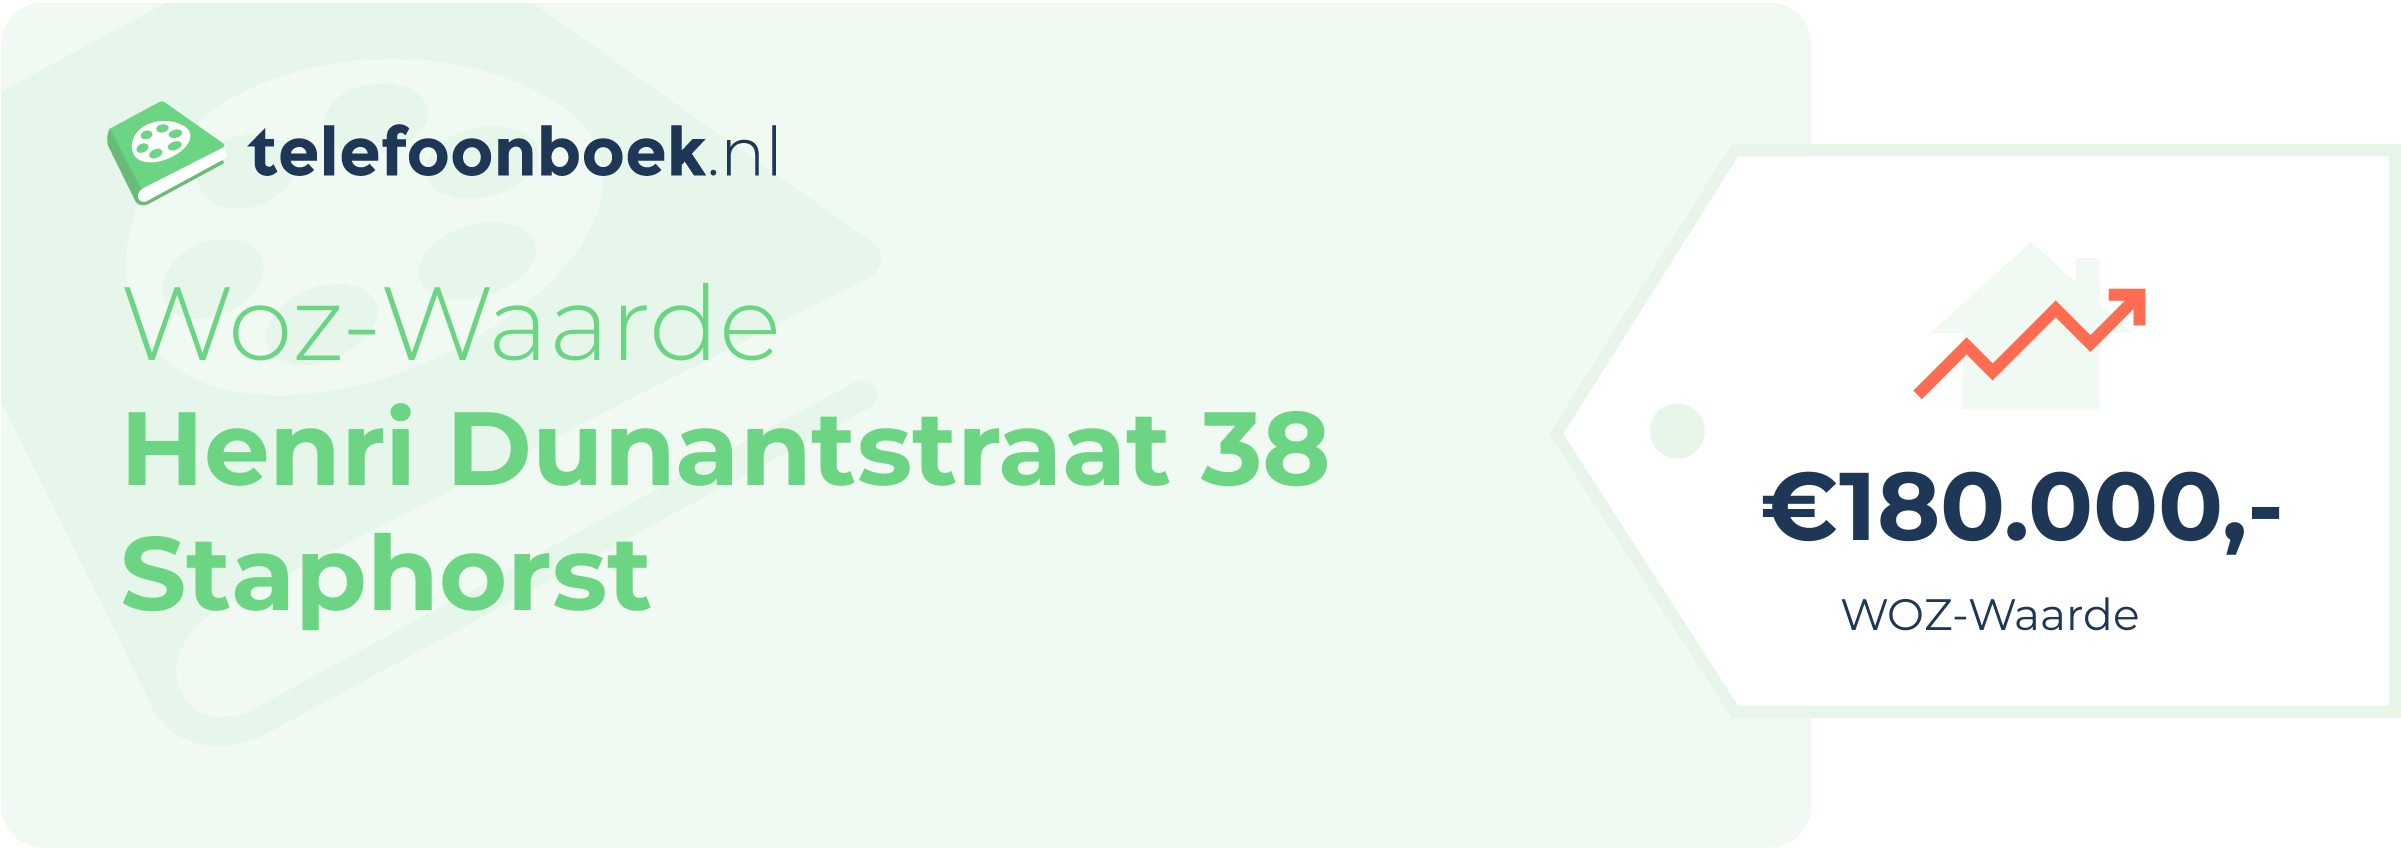 WOZ-waarde Henri Dunantstraat 38 Staphorst